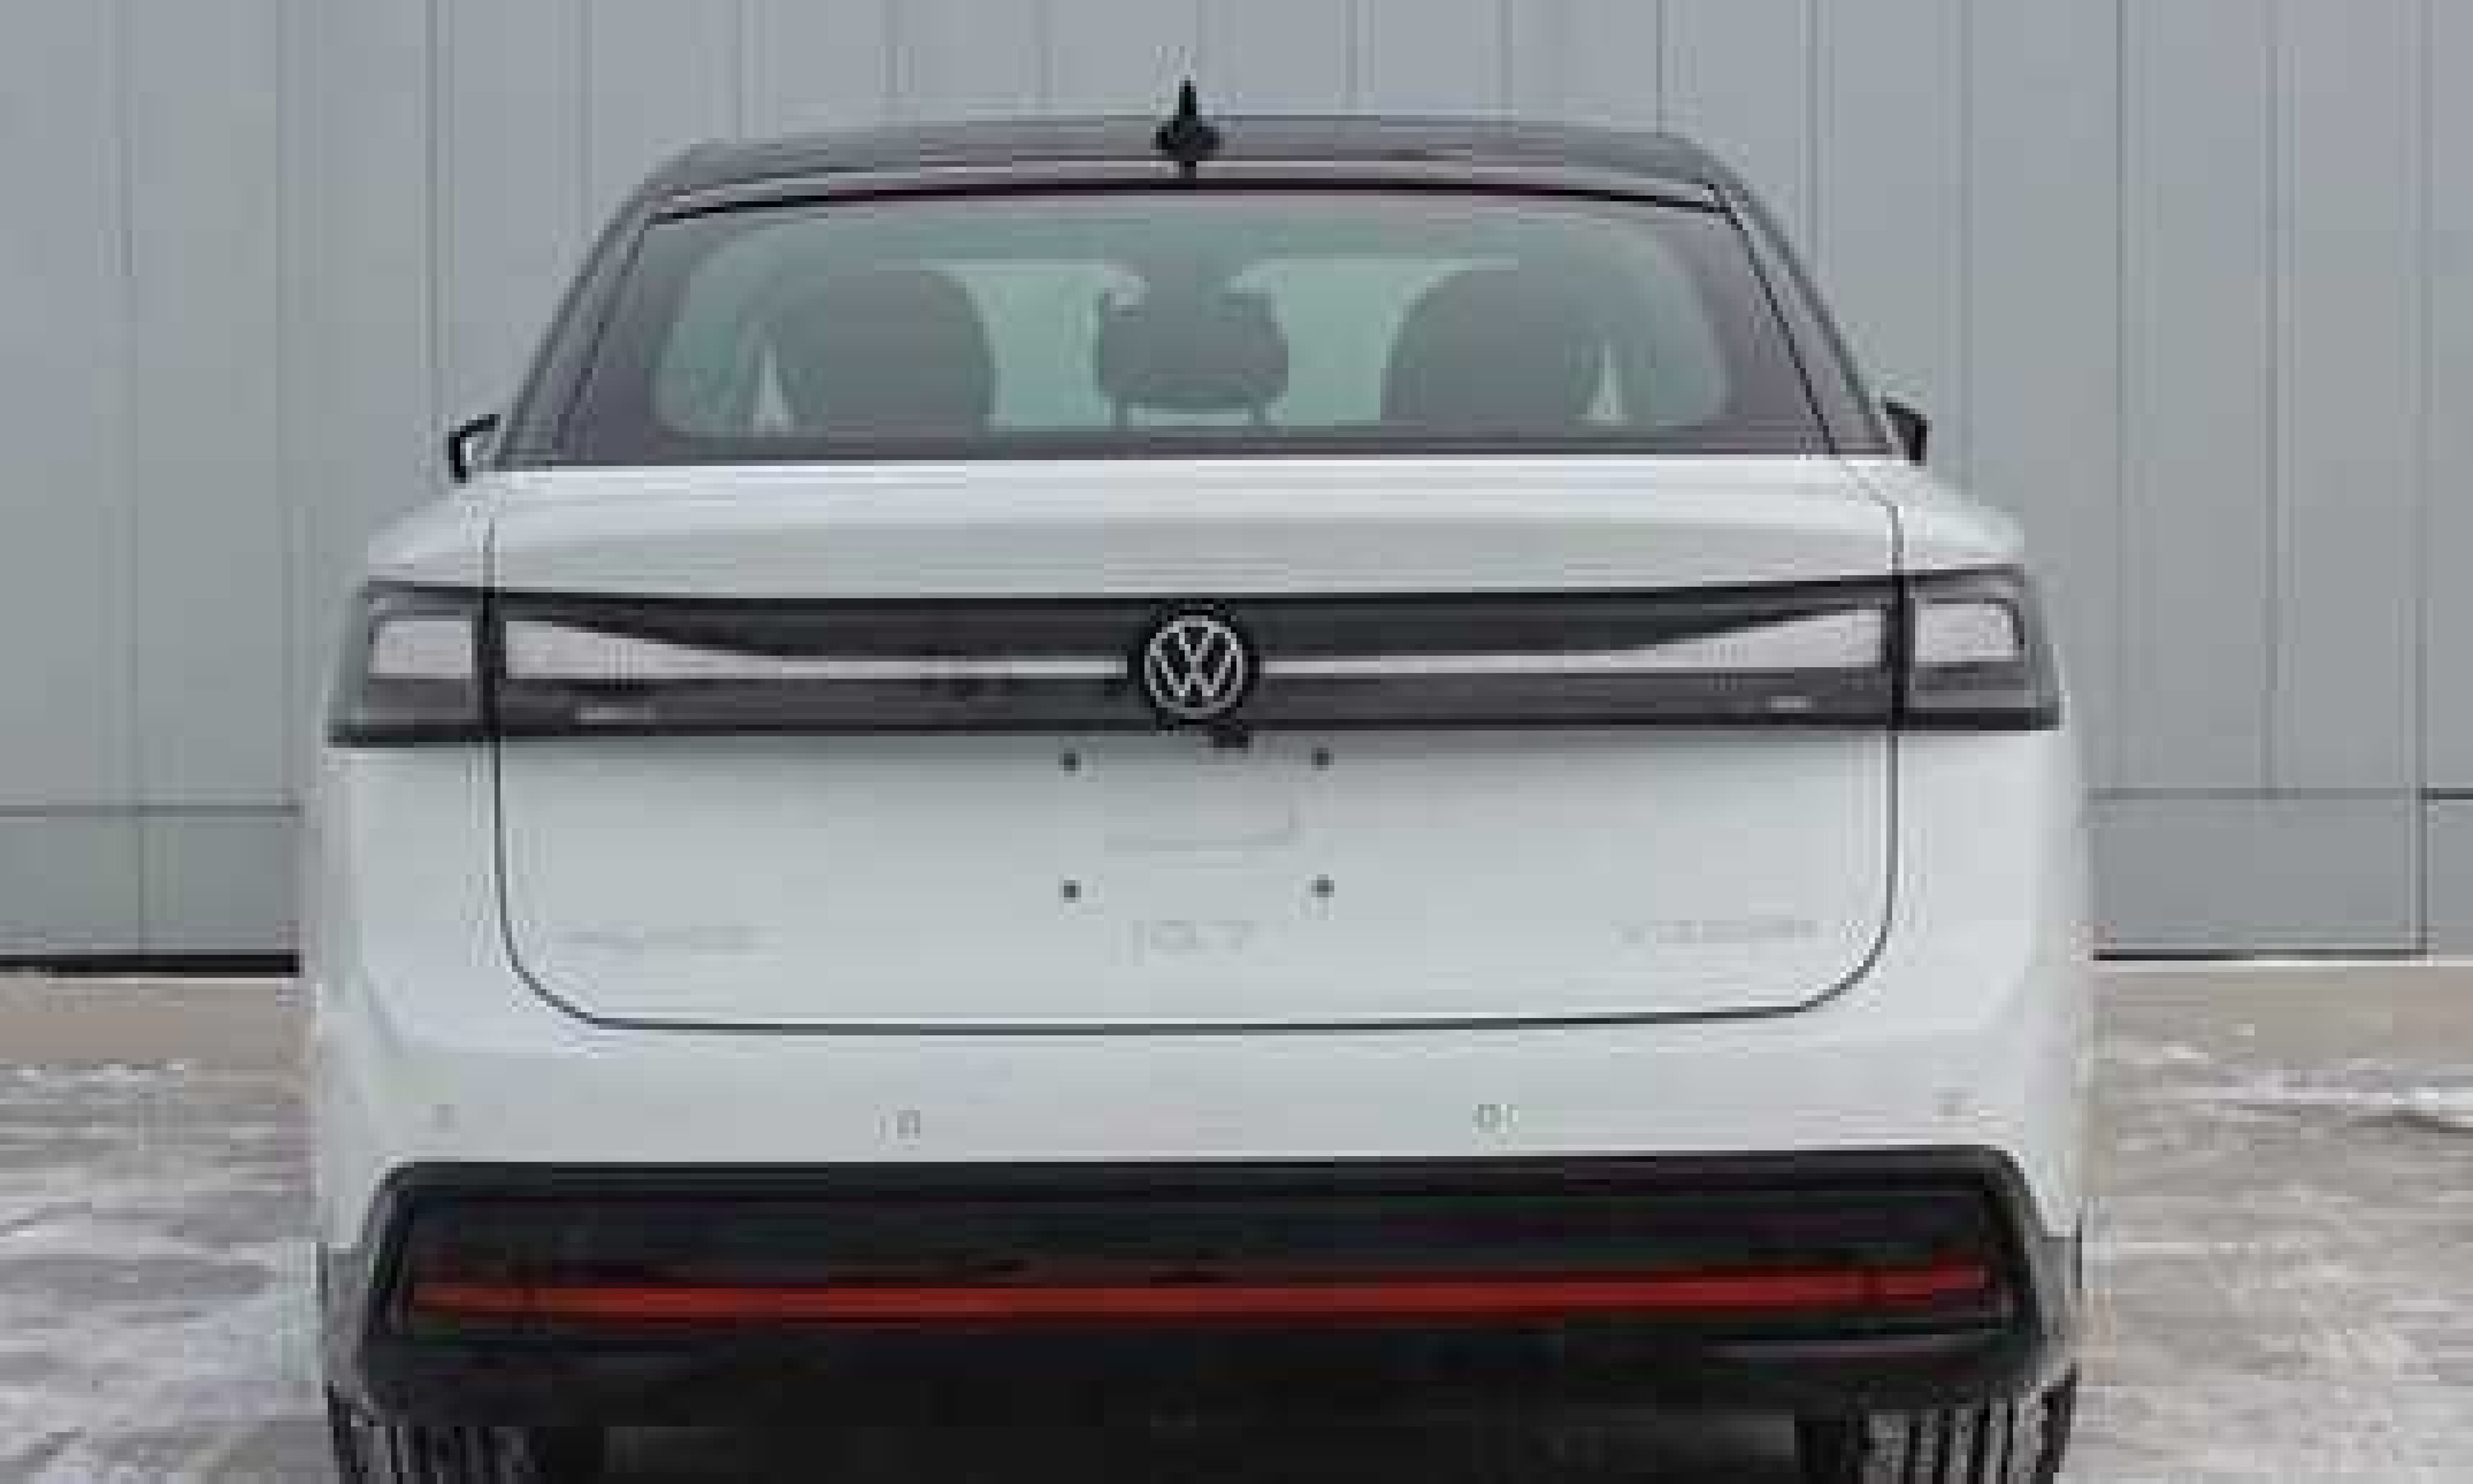 Volkswagen ID.7 EV leaked ahead of tonight's debut